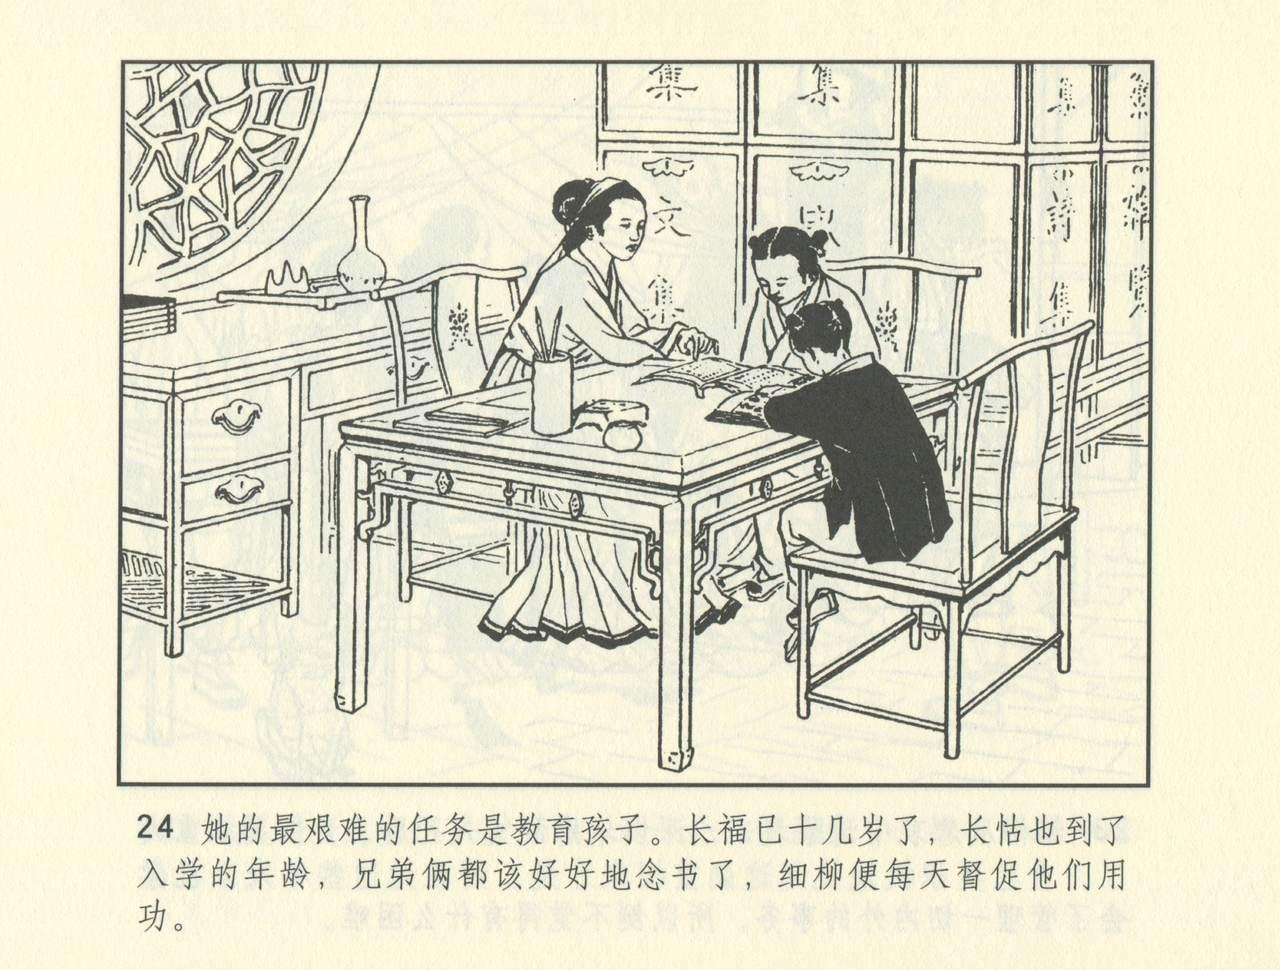 聊斋志异 张玮等绘 天津人民美术出版社 卷二十一 ~ 三十 496